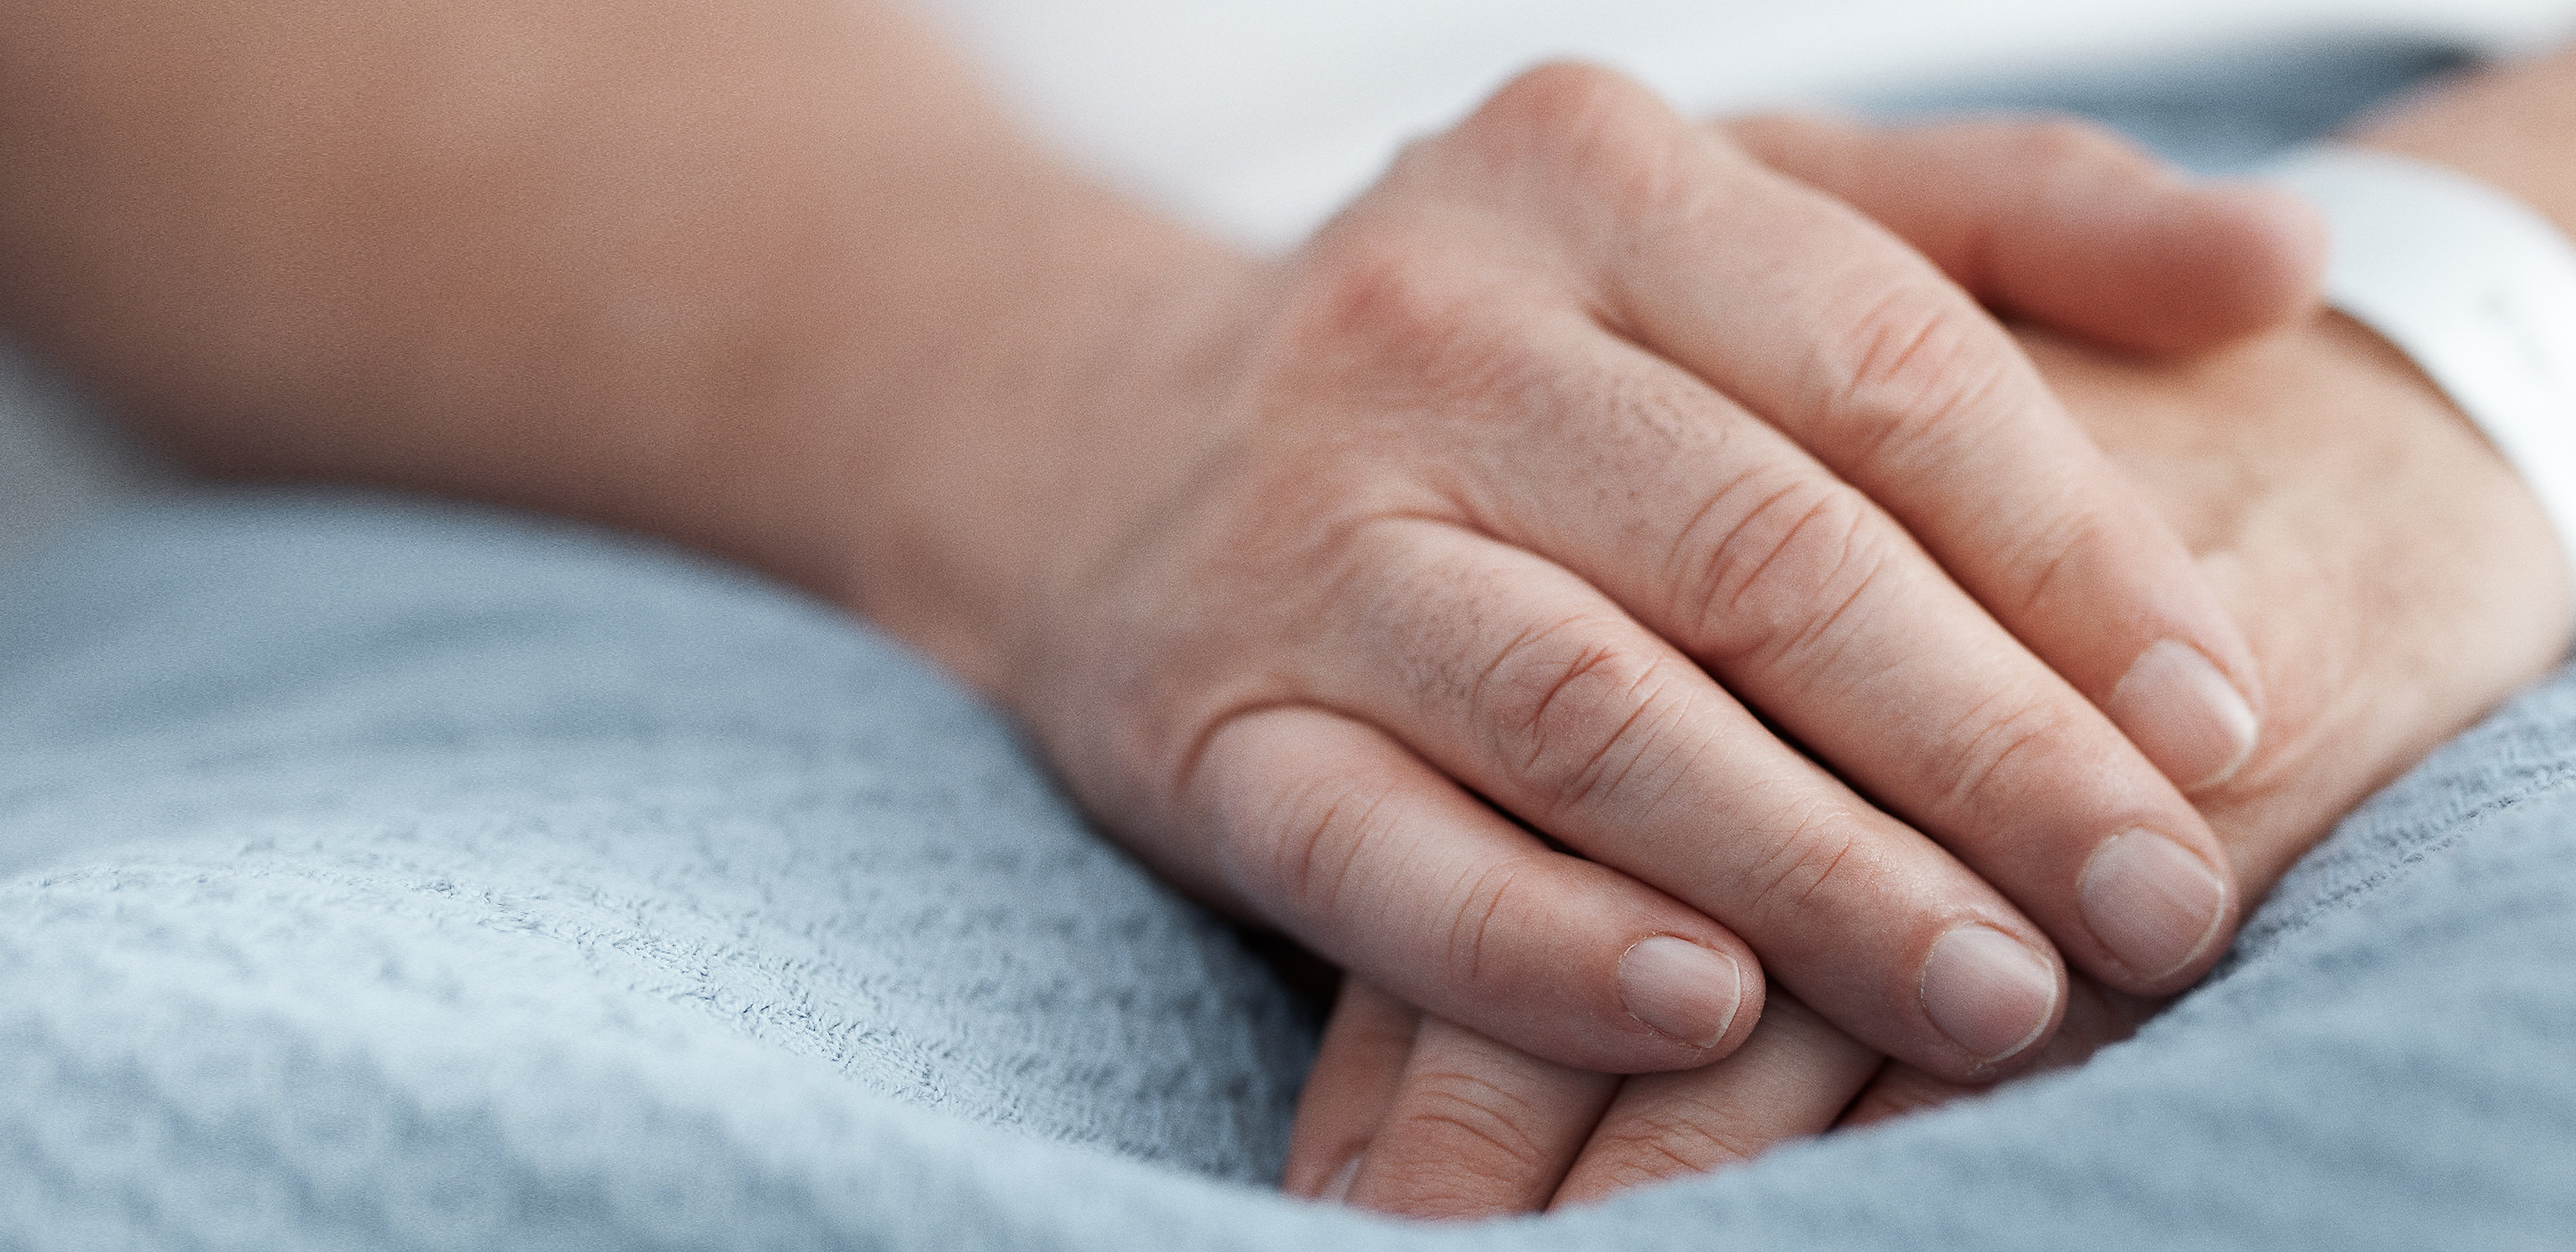 Les mains d’un patient sont posées paisiblement sur sa couverture dans un lit d’hôpital